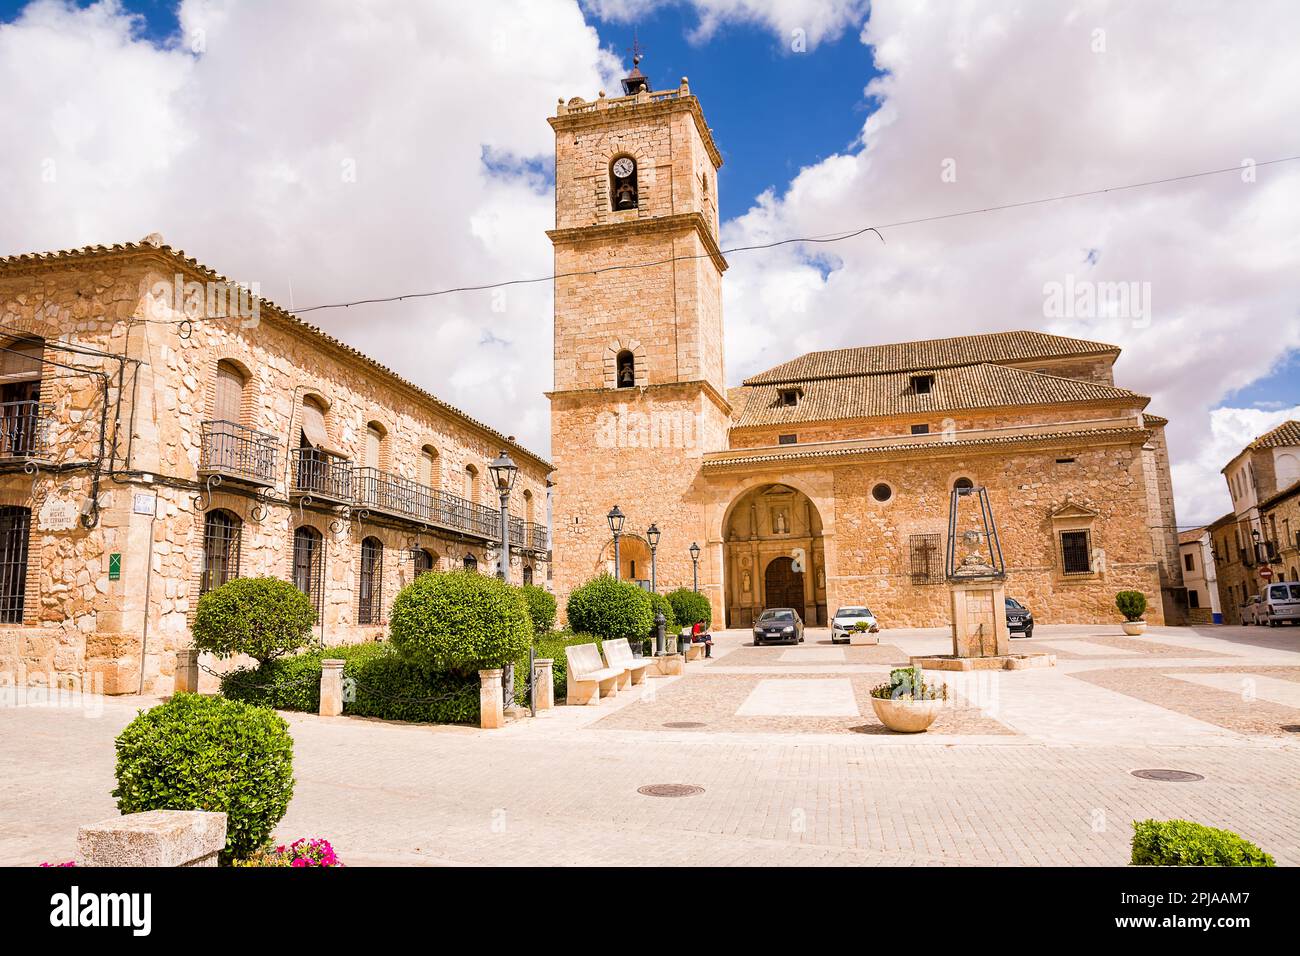 El Toboso, Spagna - 23 giugno 2022: Piazza principale della piccola città di El Toboso in Spagna, famosa per essere chiamata nel Don Chisciotte di Cervantes Foto Stock